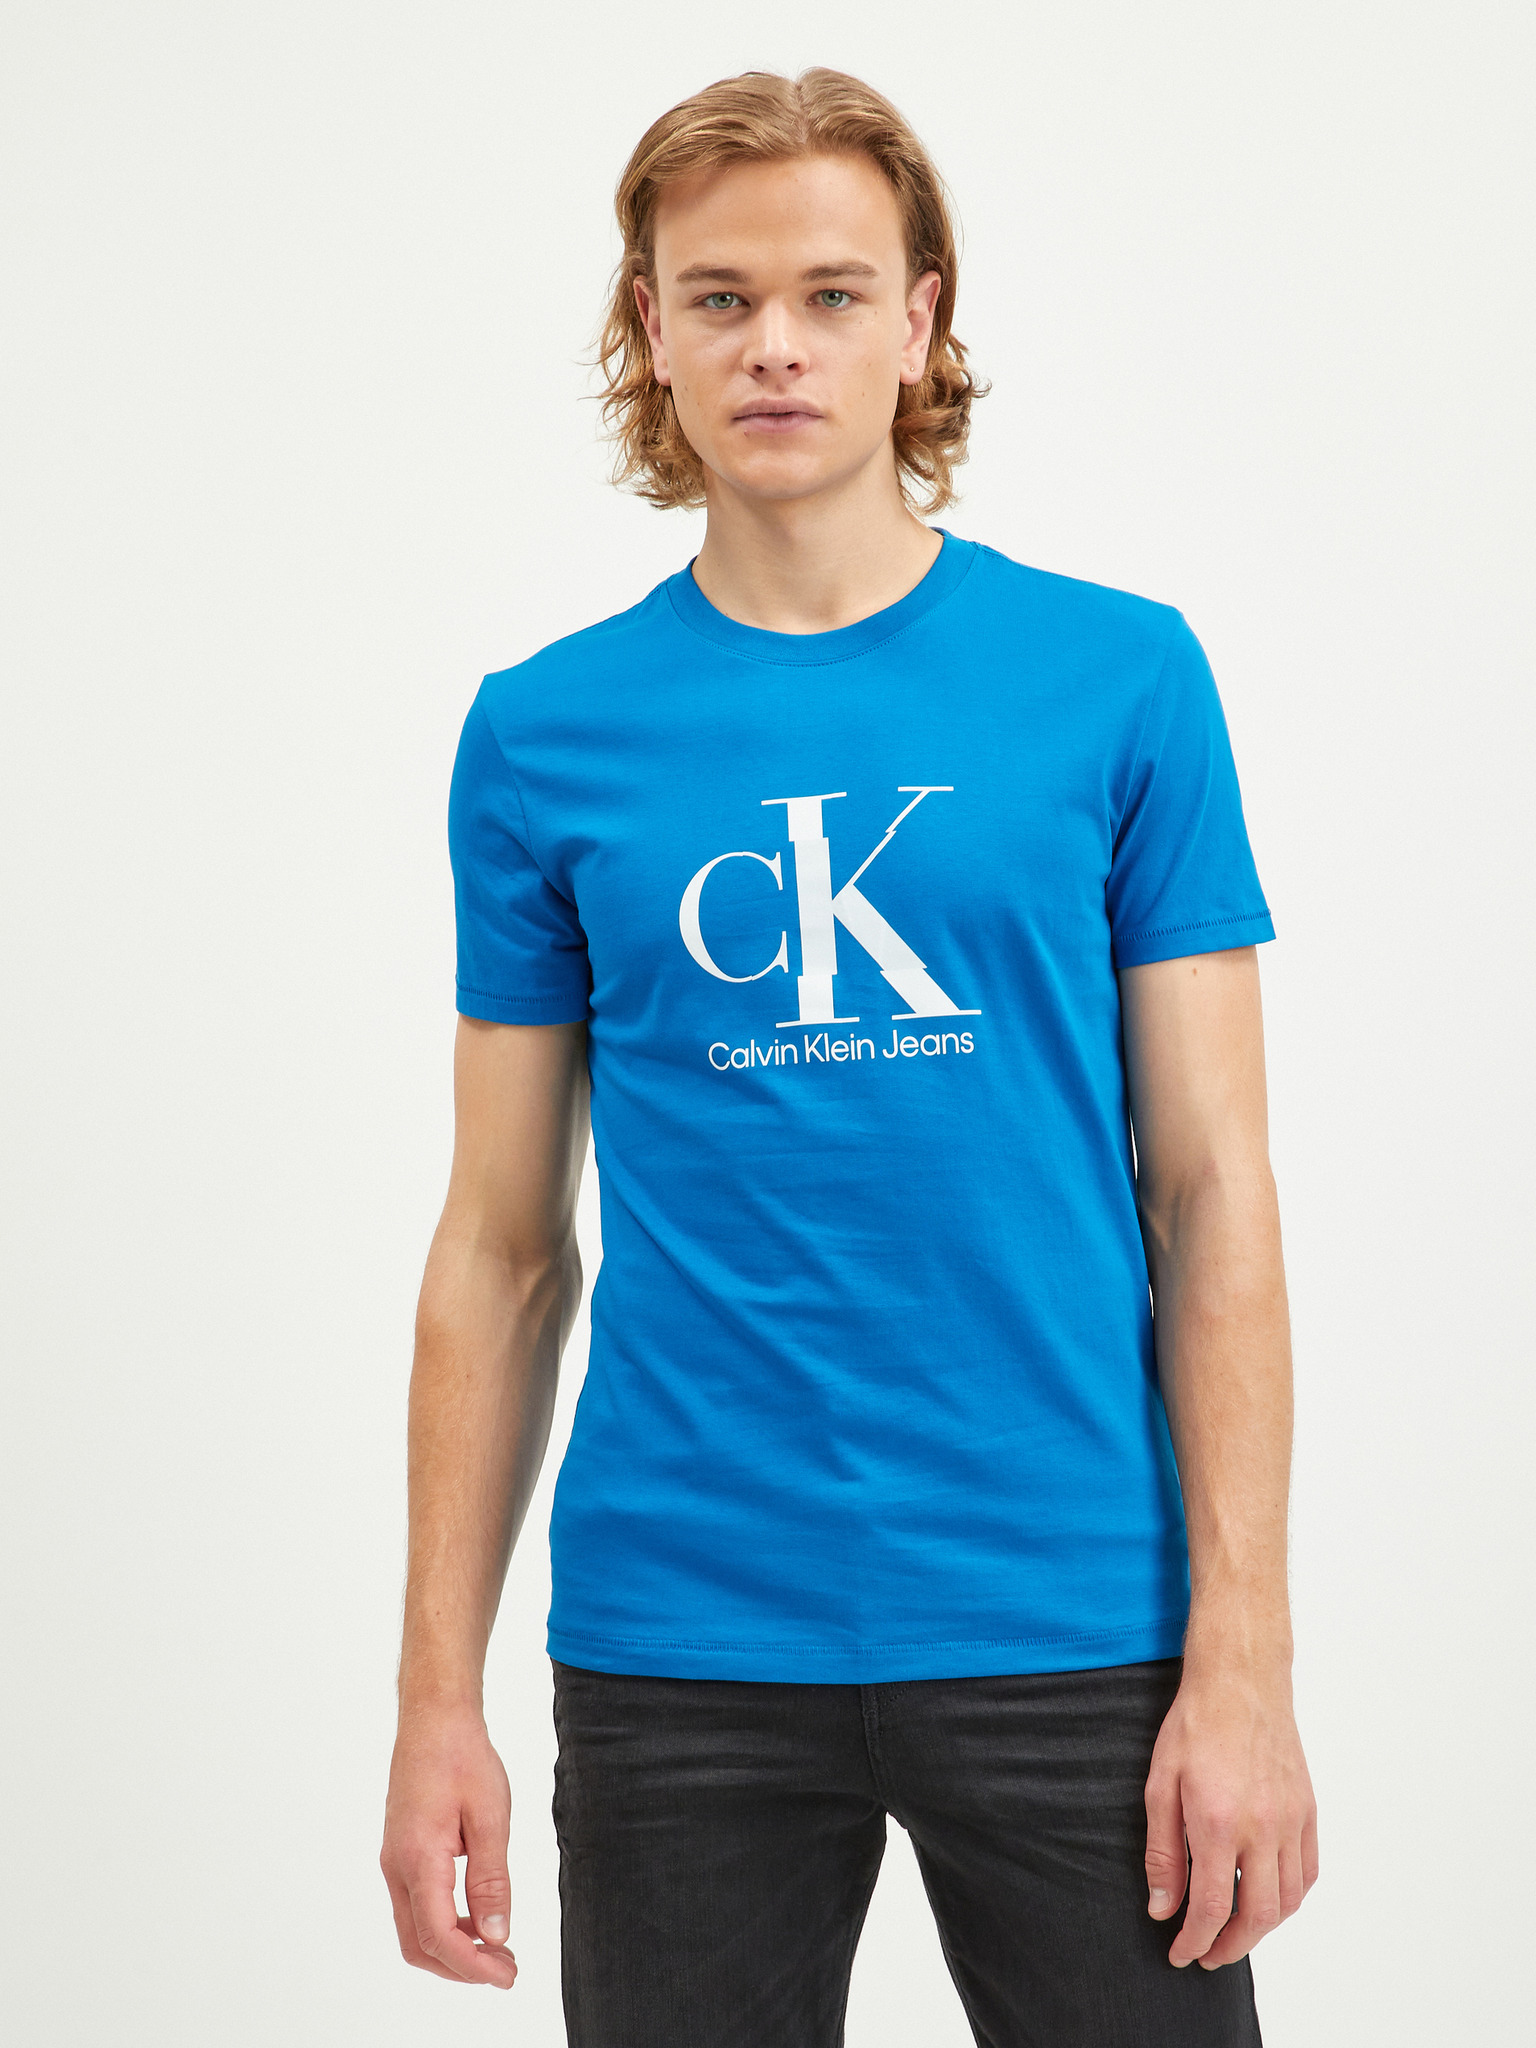 - Jeans Klein Calvin T-shirt